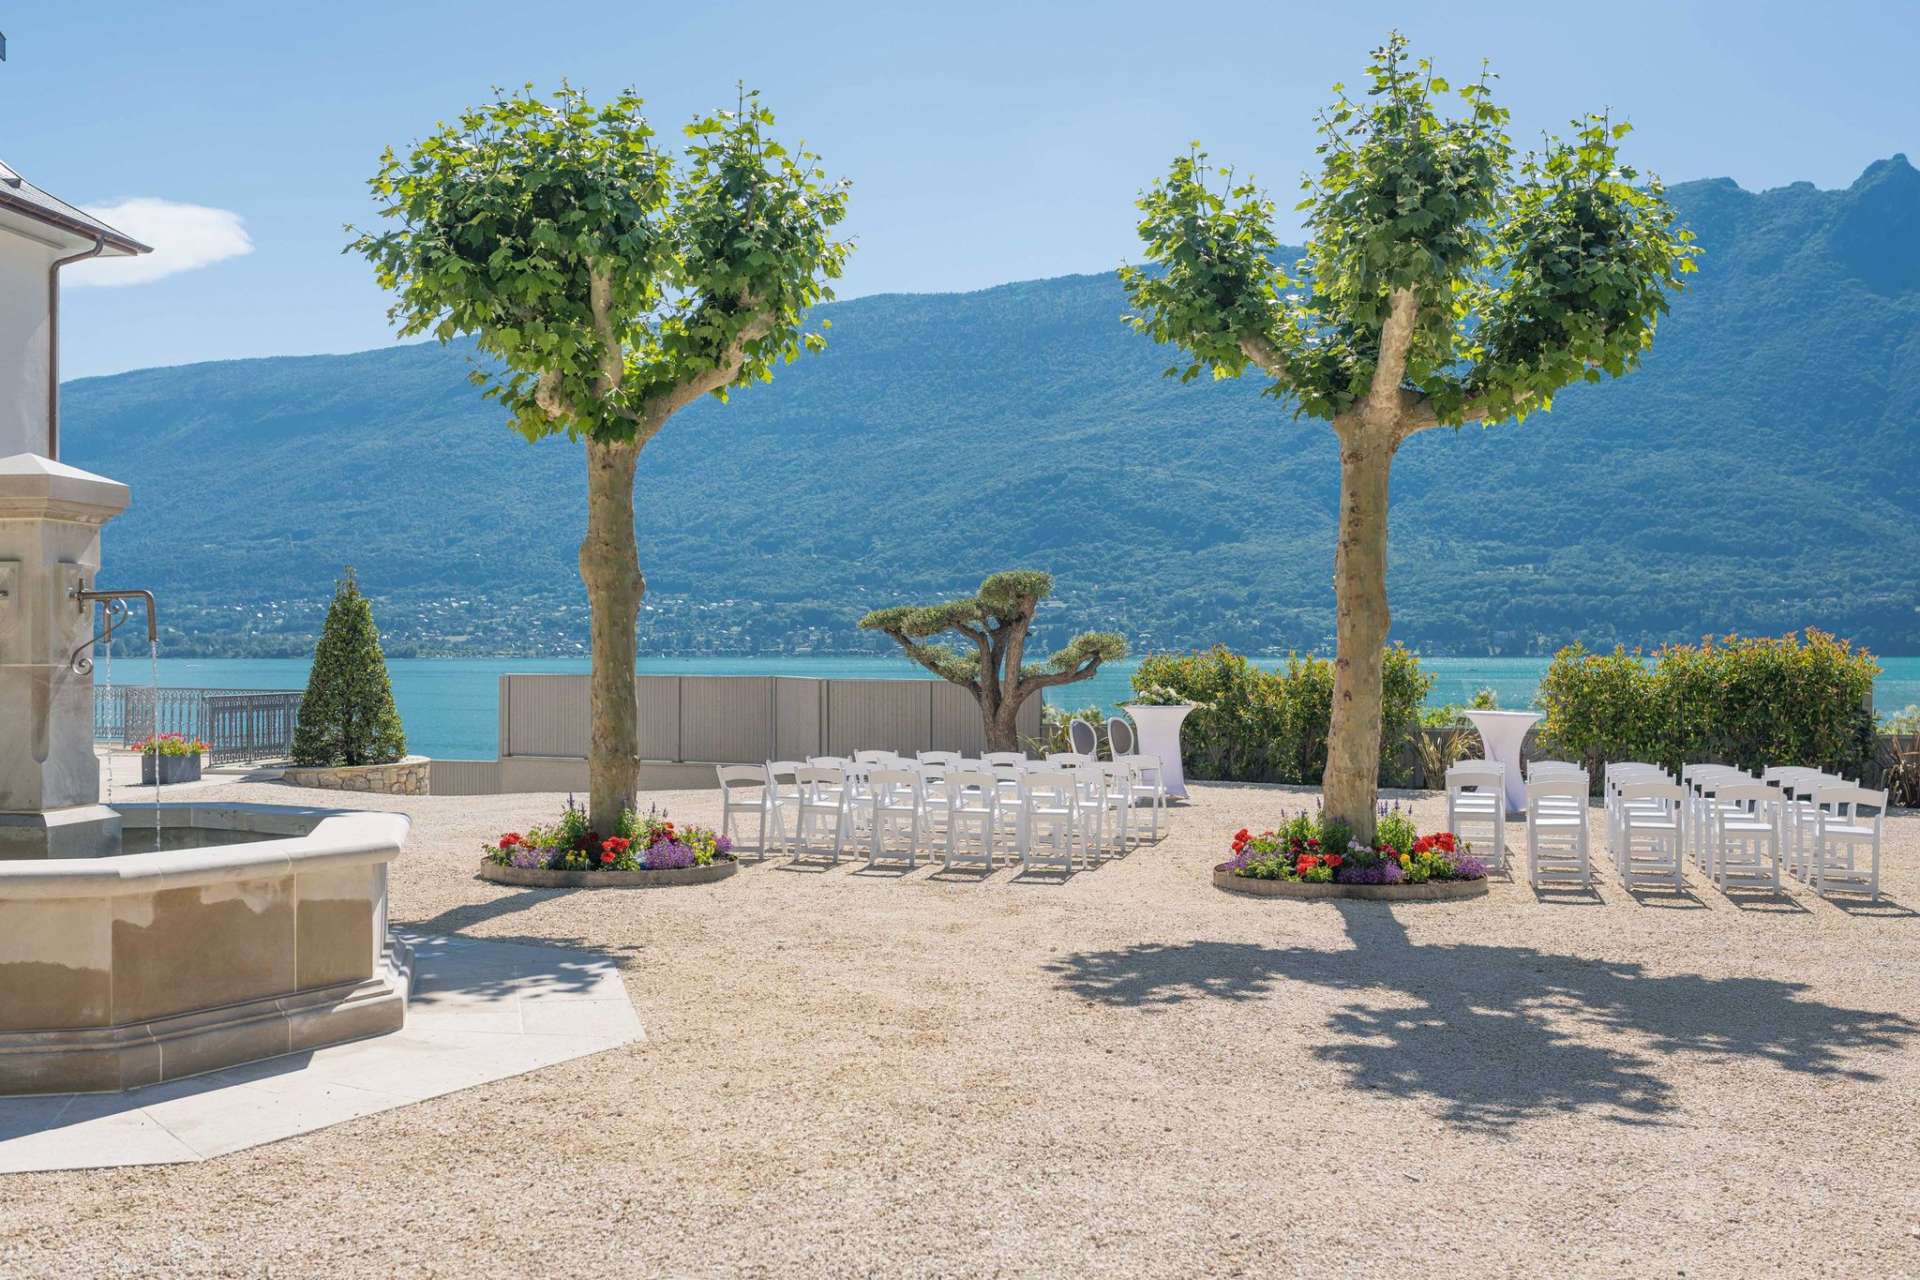 Découvrez pour vos évènements professionnels en Savoie, Le Château De Tresserve. c'est un lieu exceptionnel adapté à tous types d'évènement, face au Lac du Bourget.